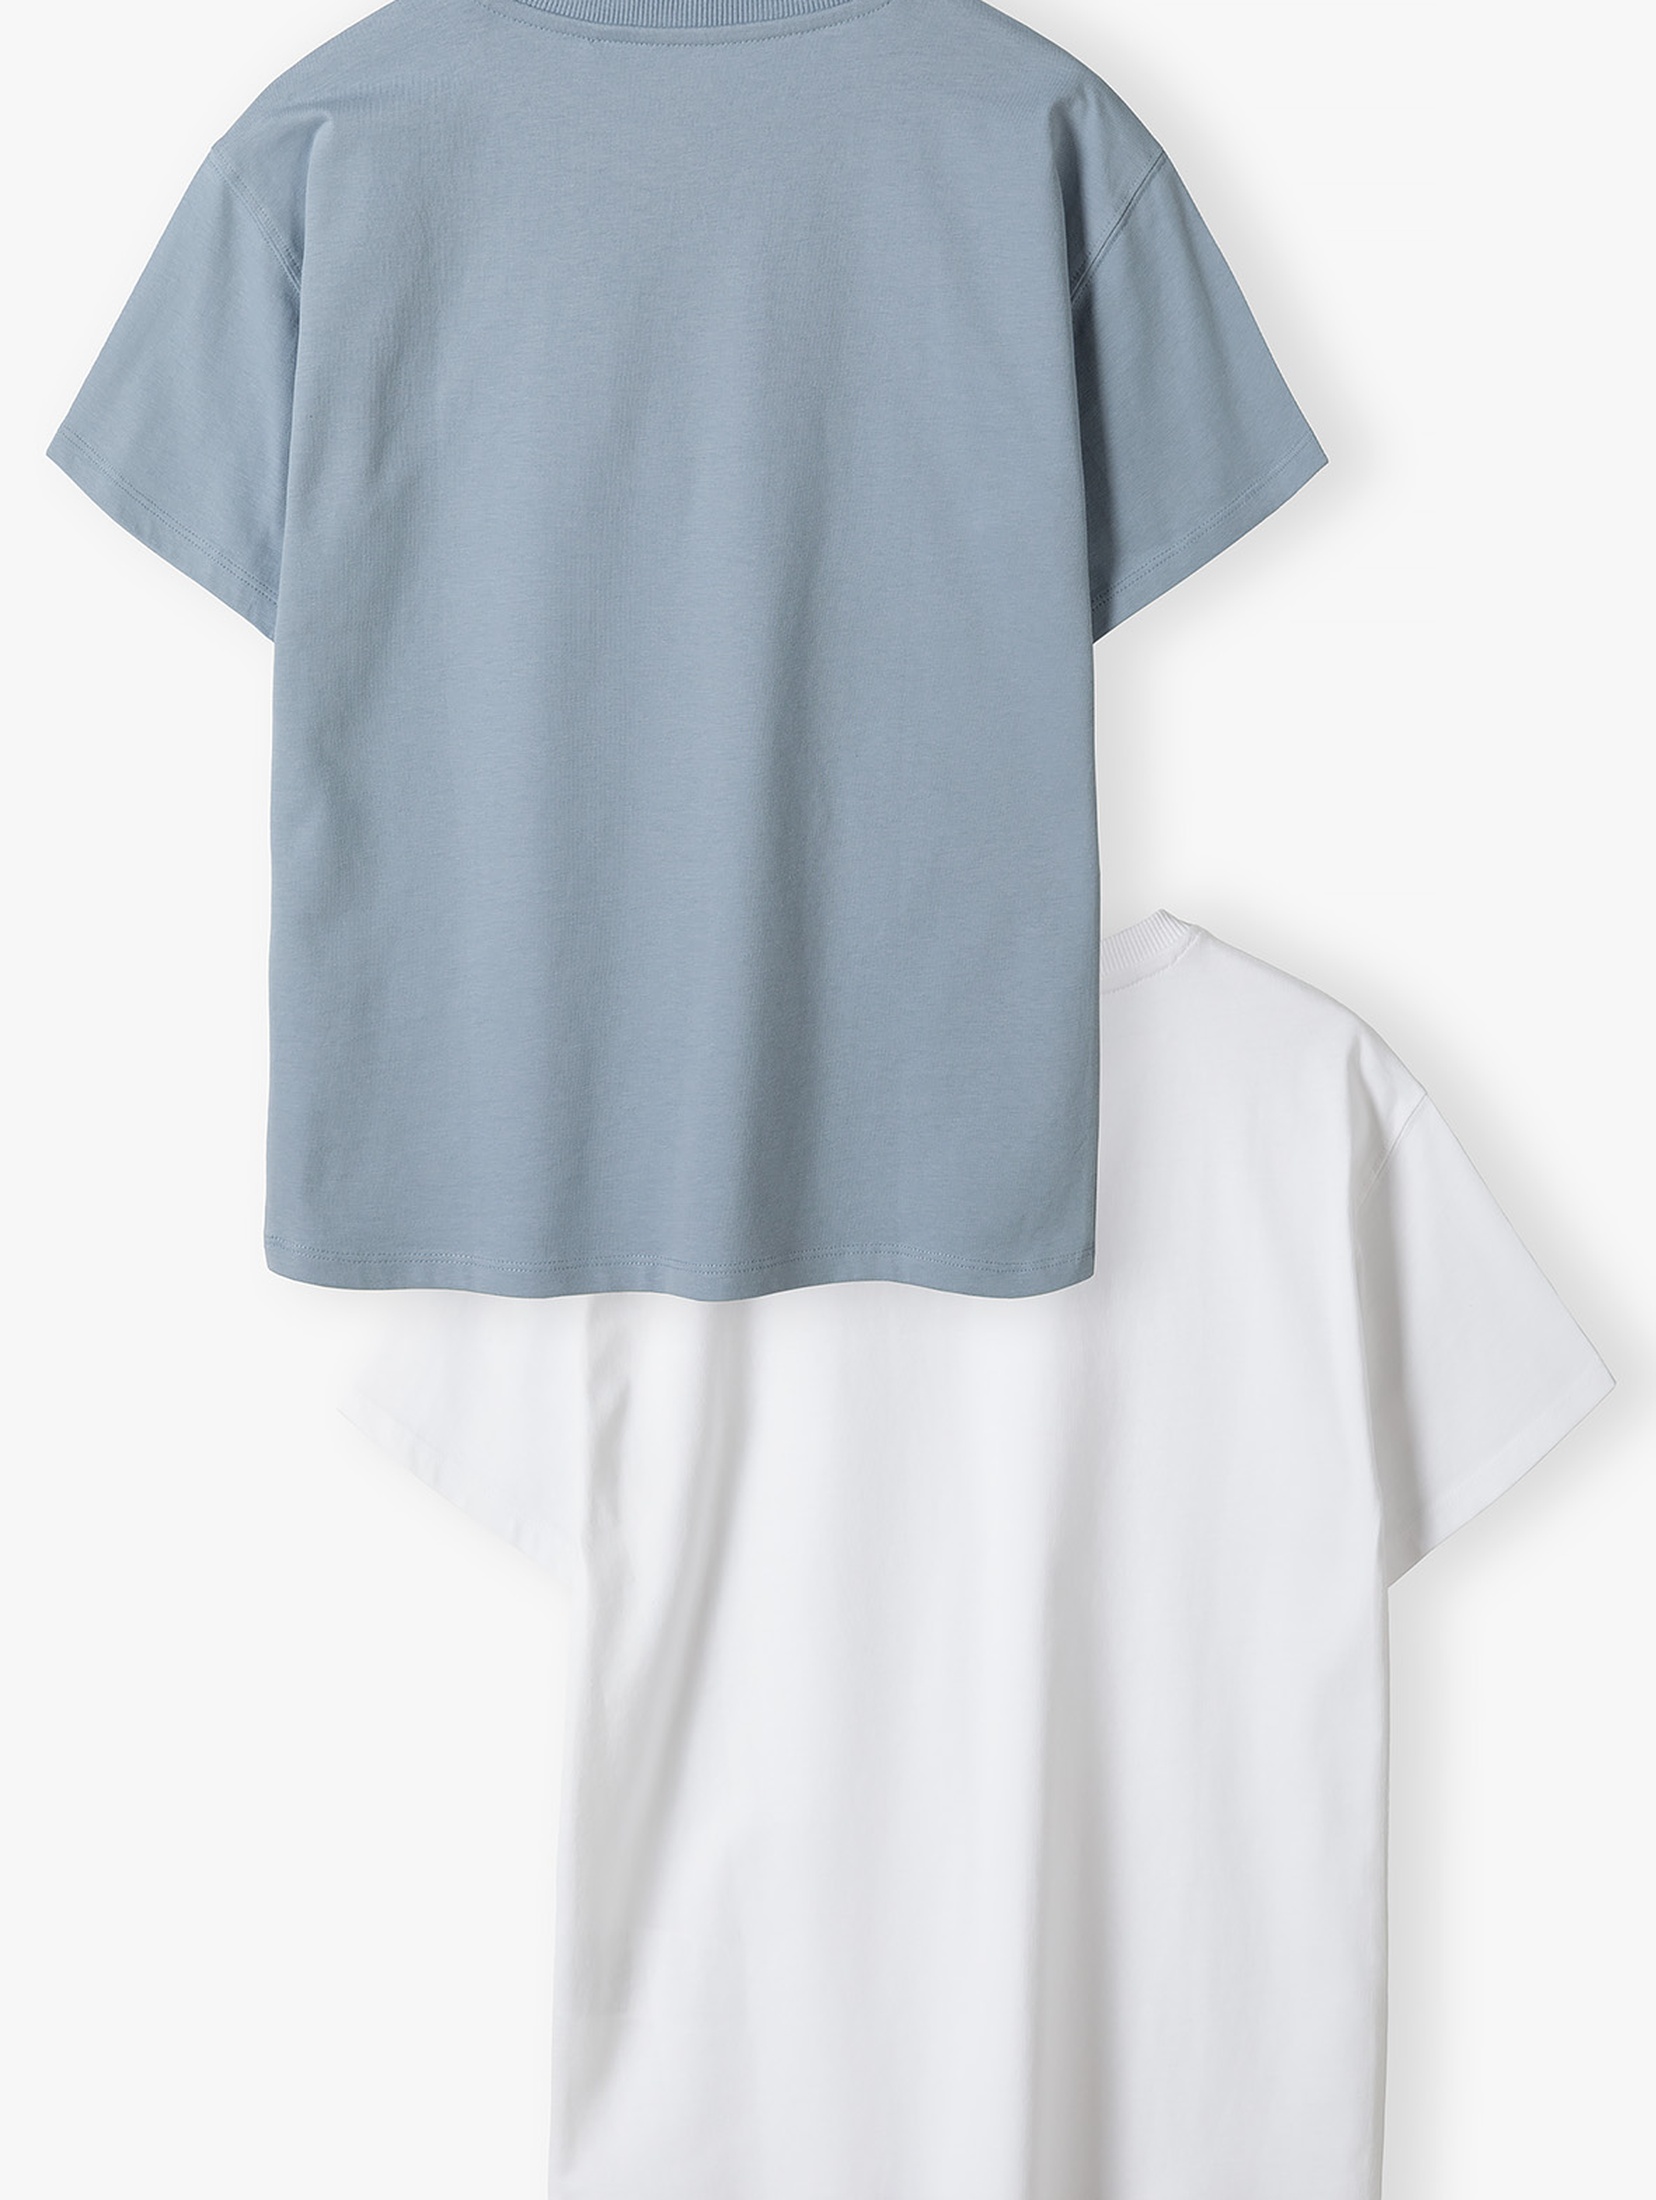 Bawełniane t-shirty dla chłopca - niebieski i biały - Limited Edition